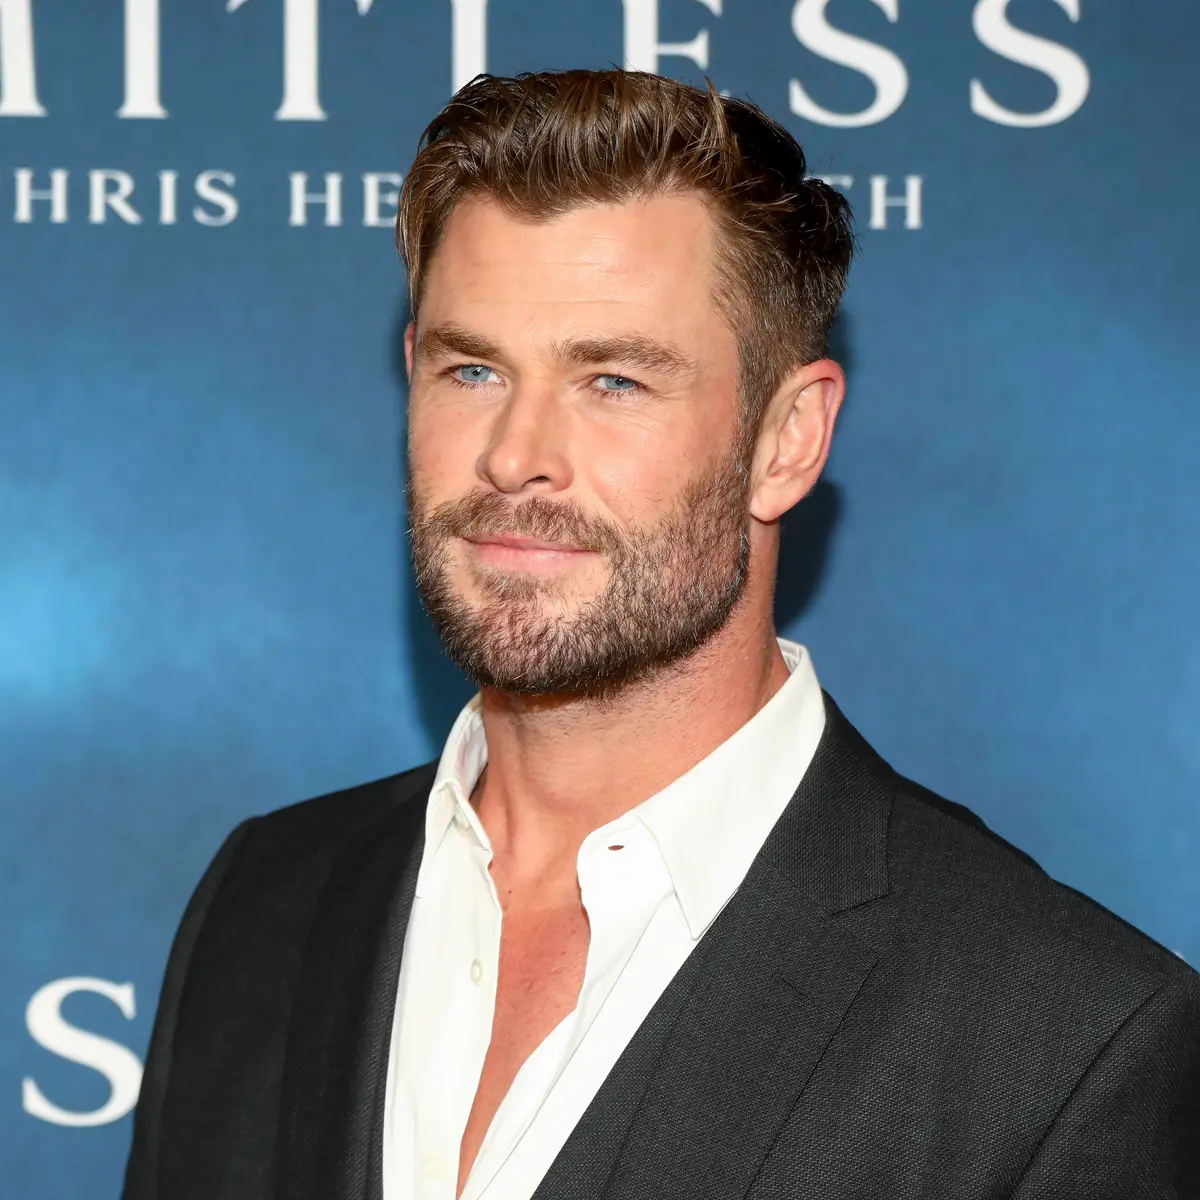 Chris Hemsworth descobre que tem grande chance de ter Alzheimer: 'Chocante